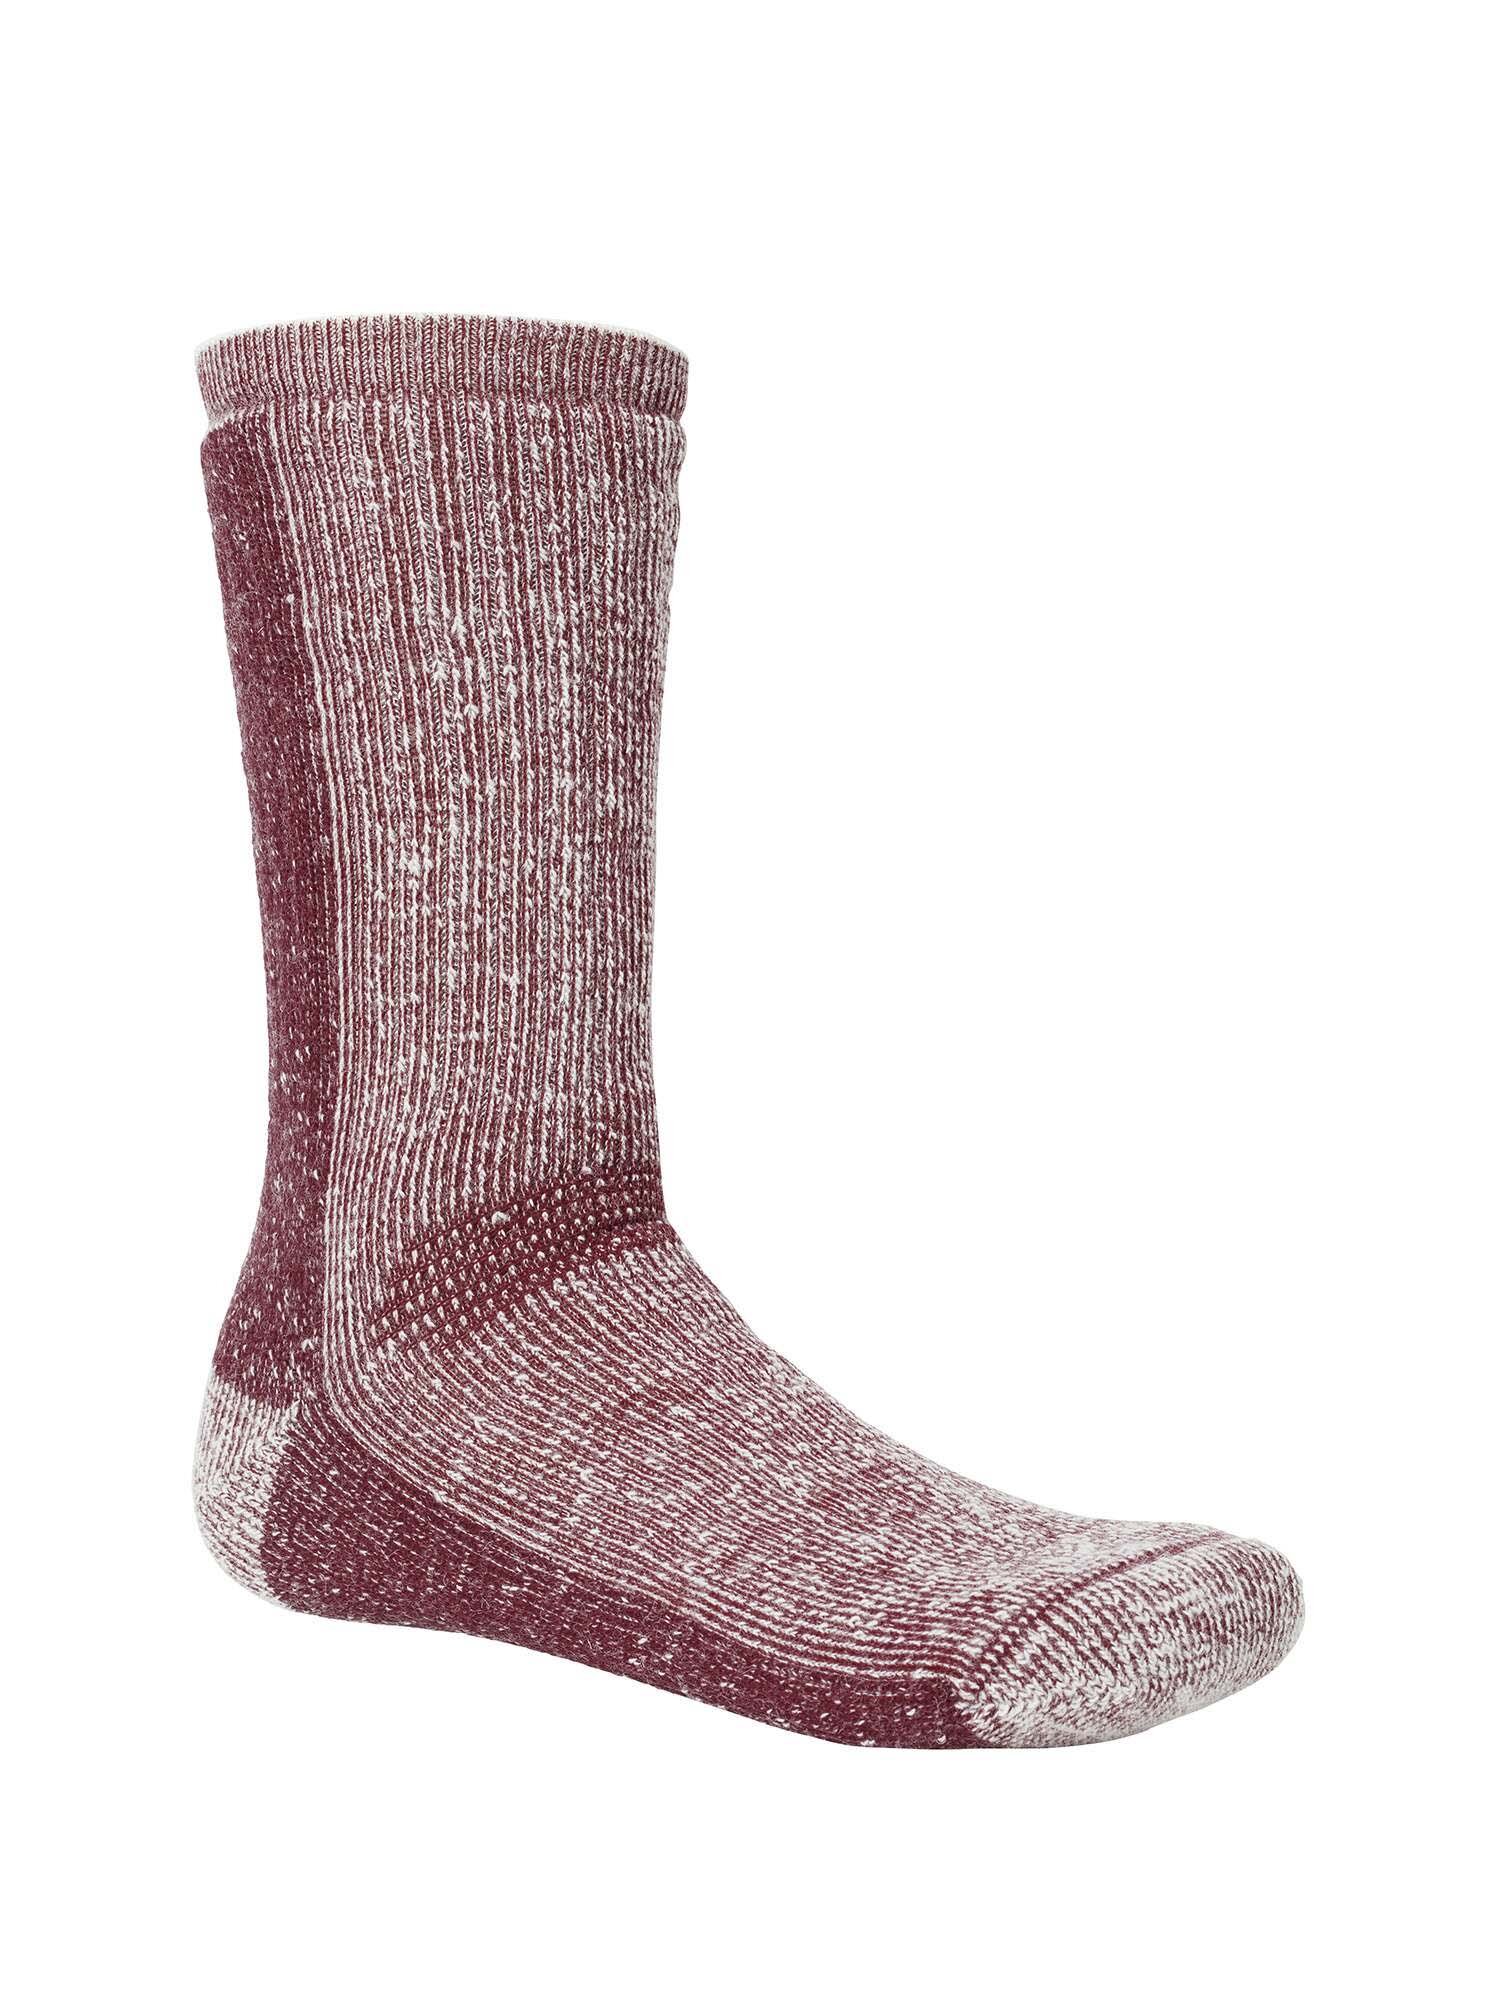 Frostbite Winter Wool Socks